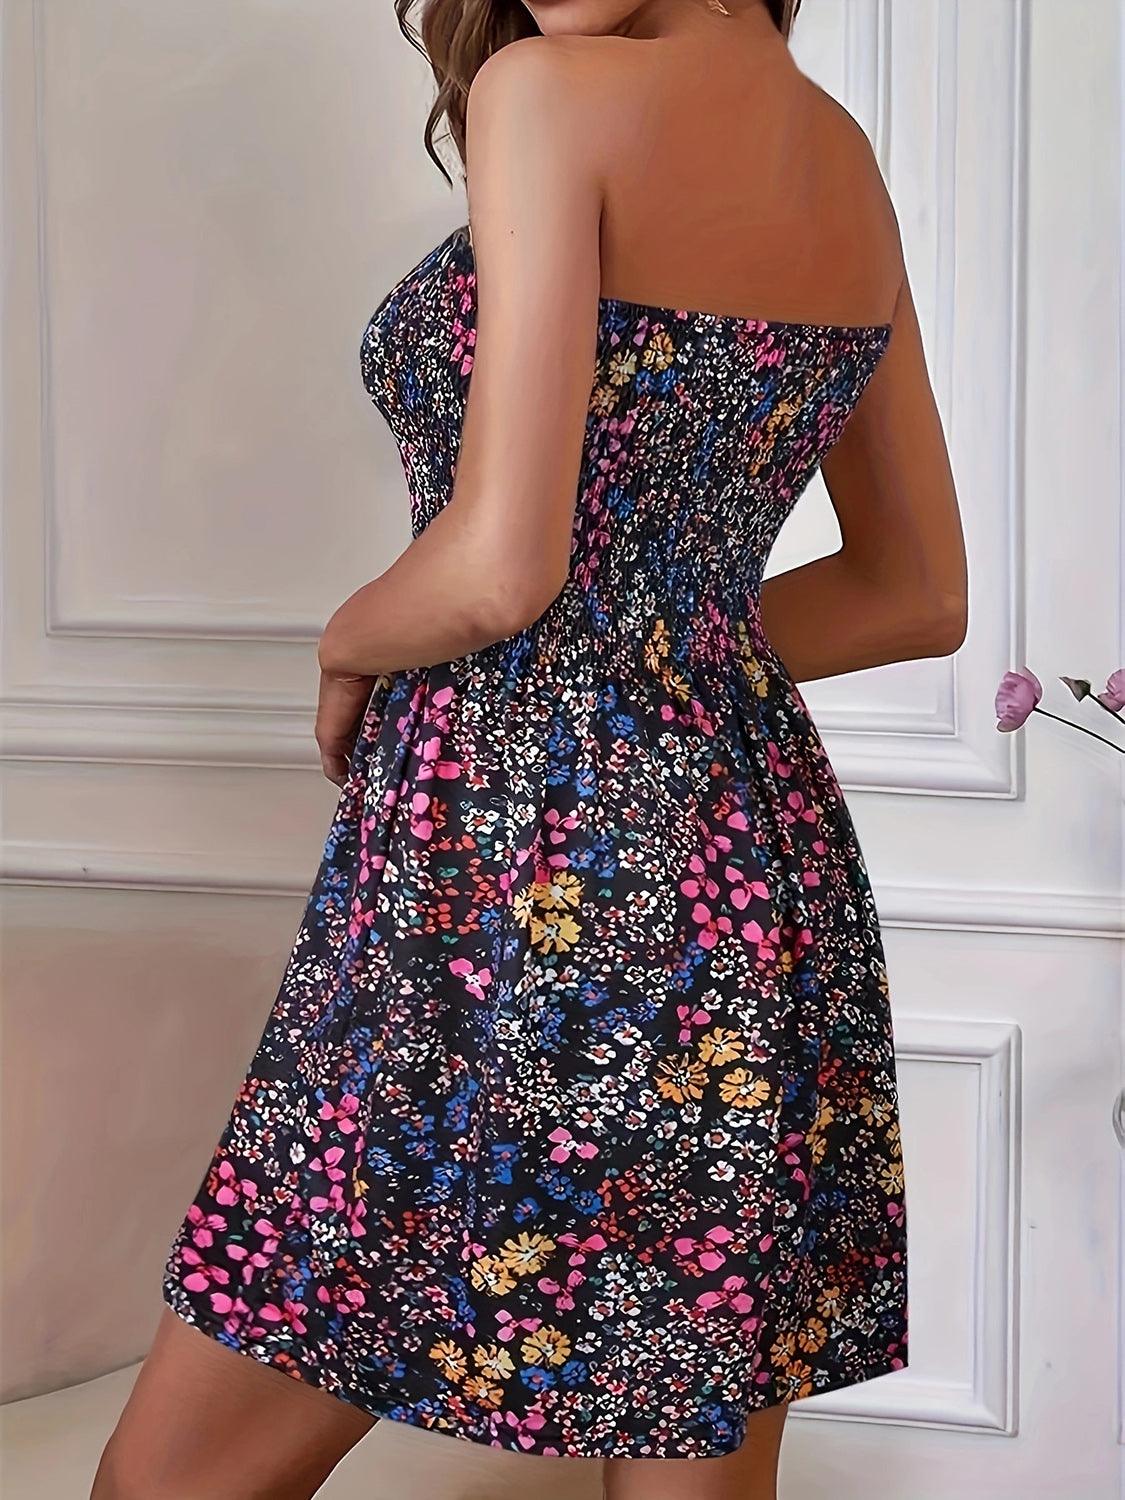 Bona Fide Fashion - Full Size Smocked Printed Tube Mini Dress - Women Fashion - Bona Fide Fashion